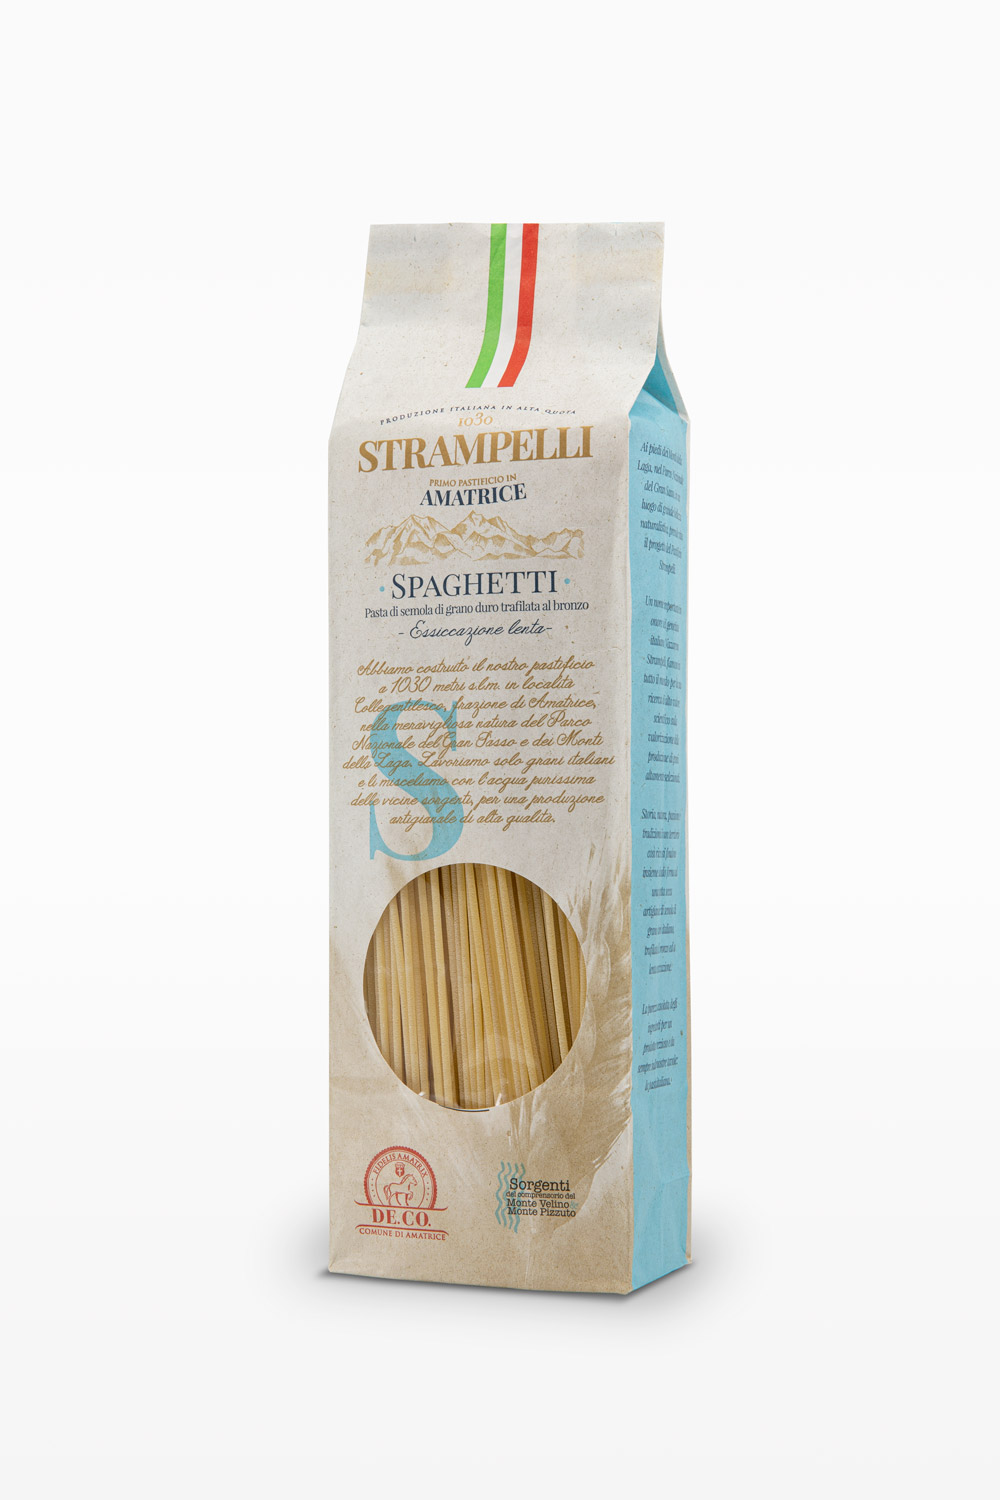 Spaghetti - Pasta di semola di grano duro trafilata al bronzo, grano 100% italiano essiccazione lenta.